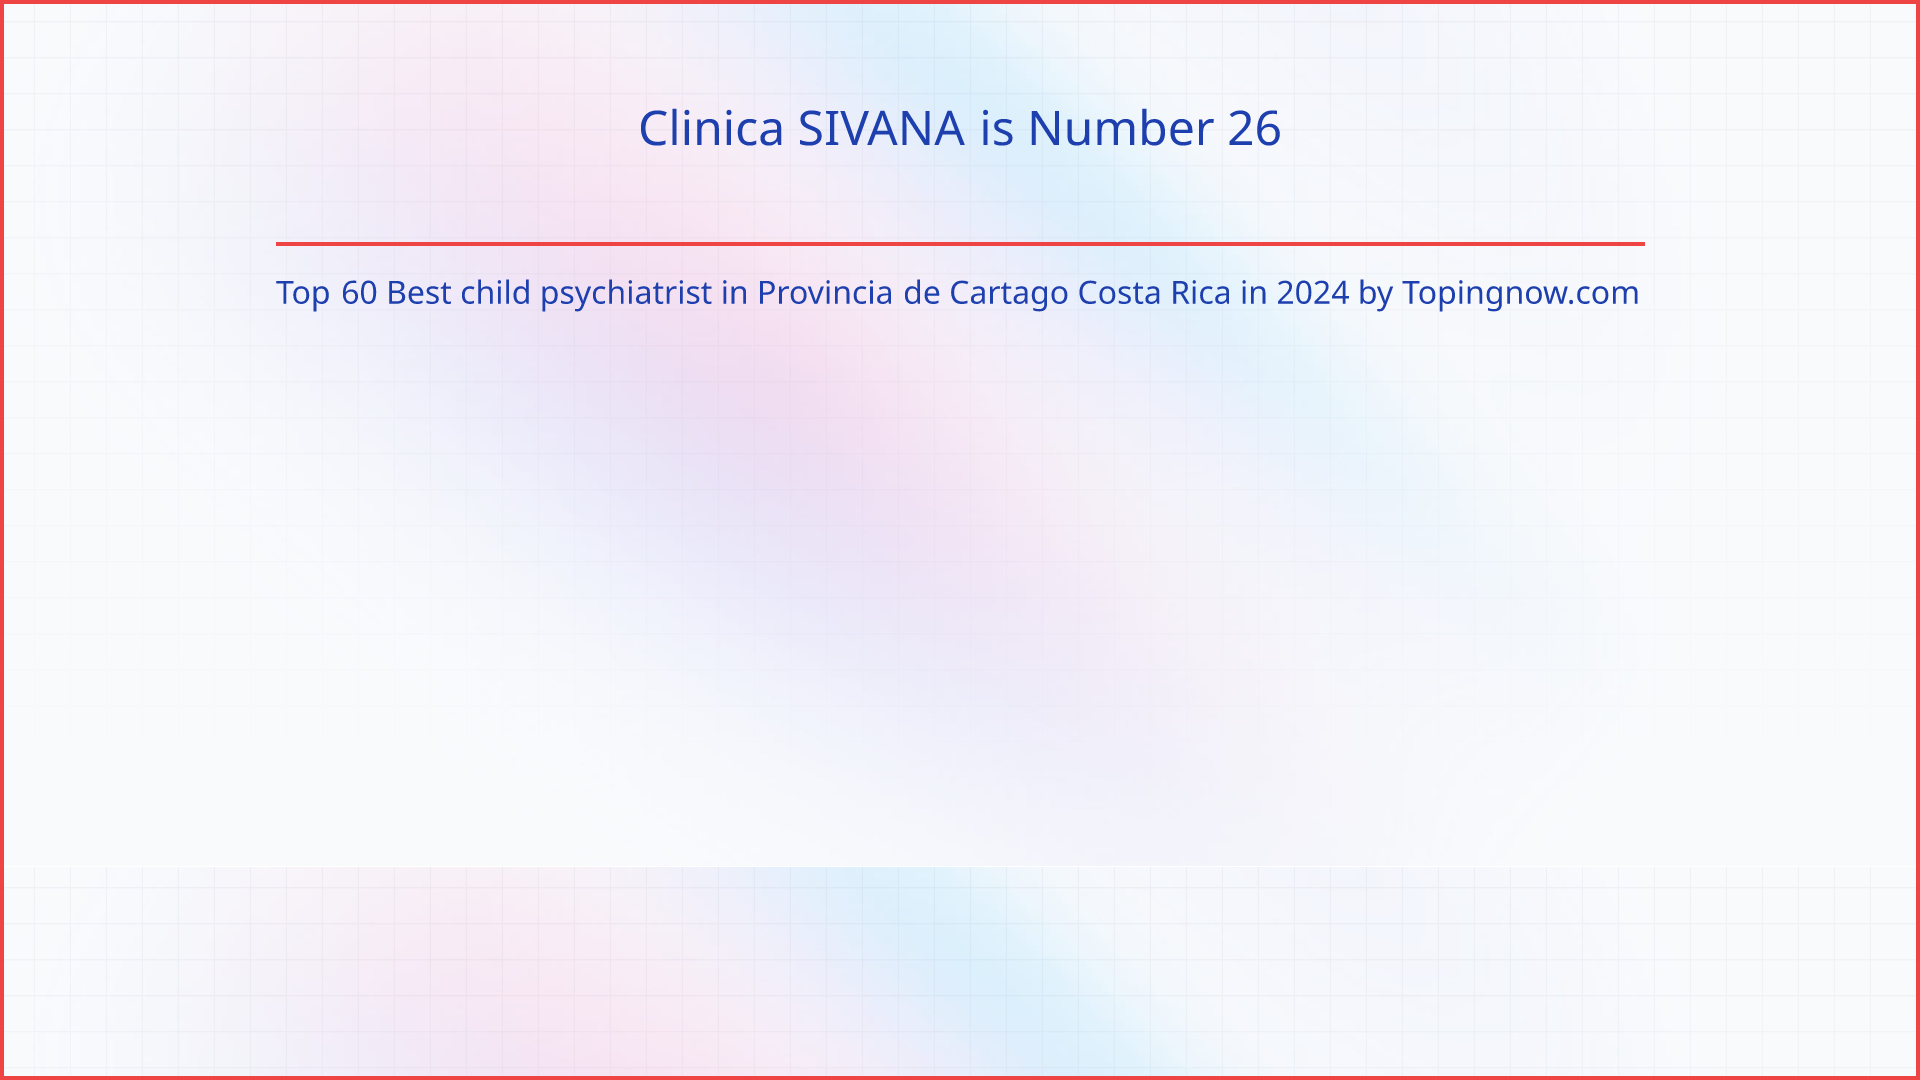 Clinica SIVANA: Top 60 Best child psychiatrist in Provincia de Cartago Costa Rica in 2024